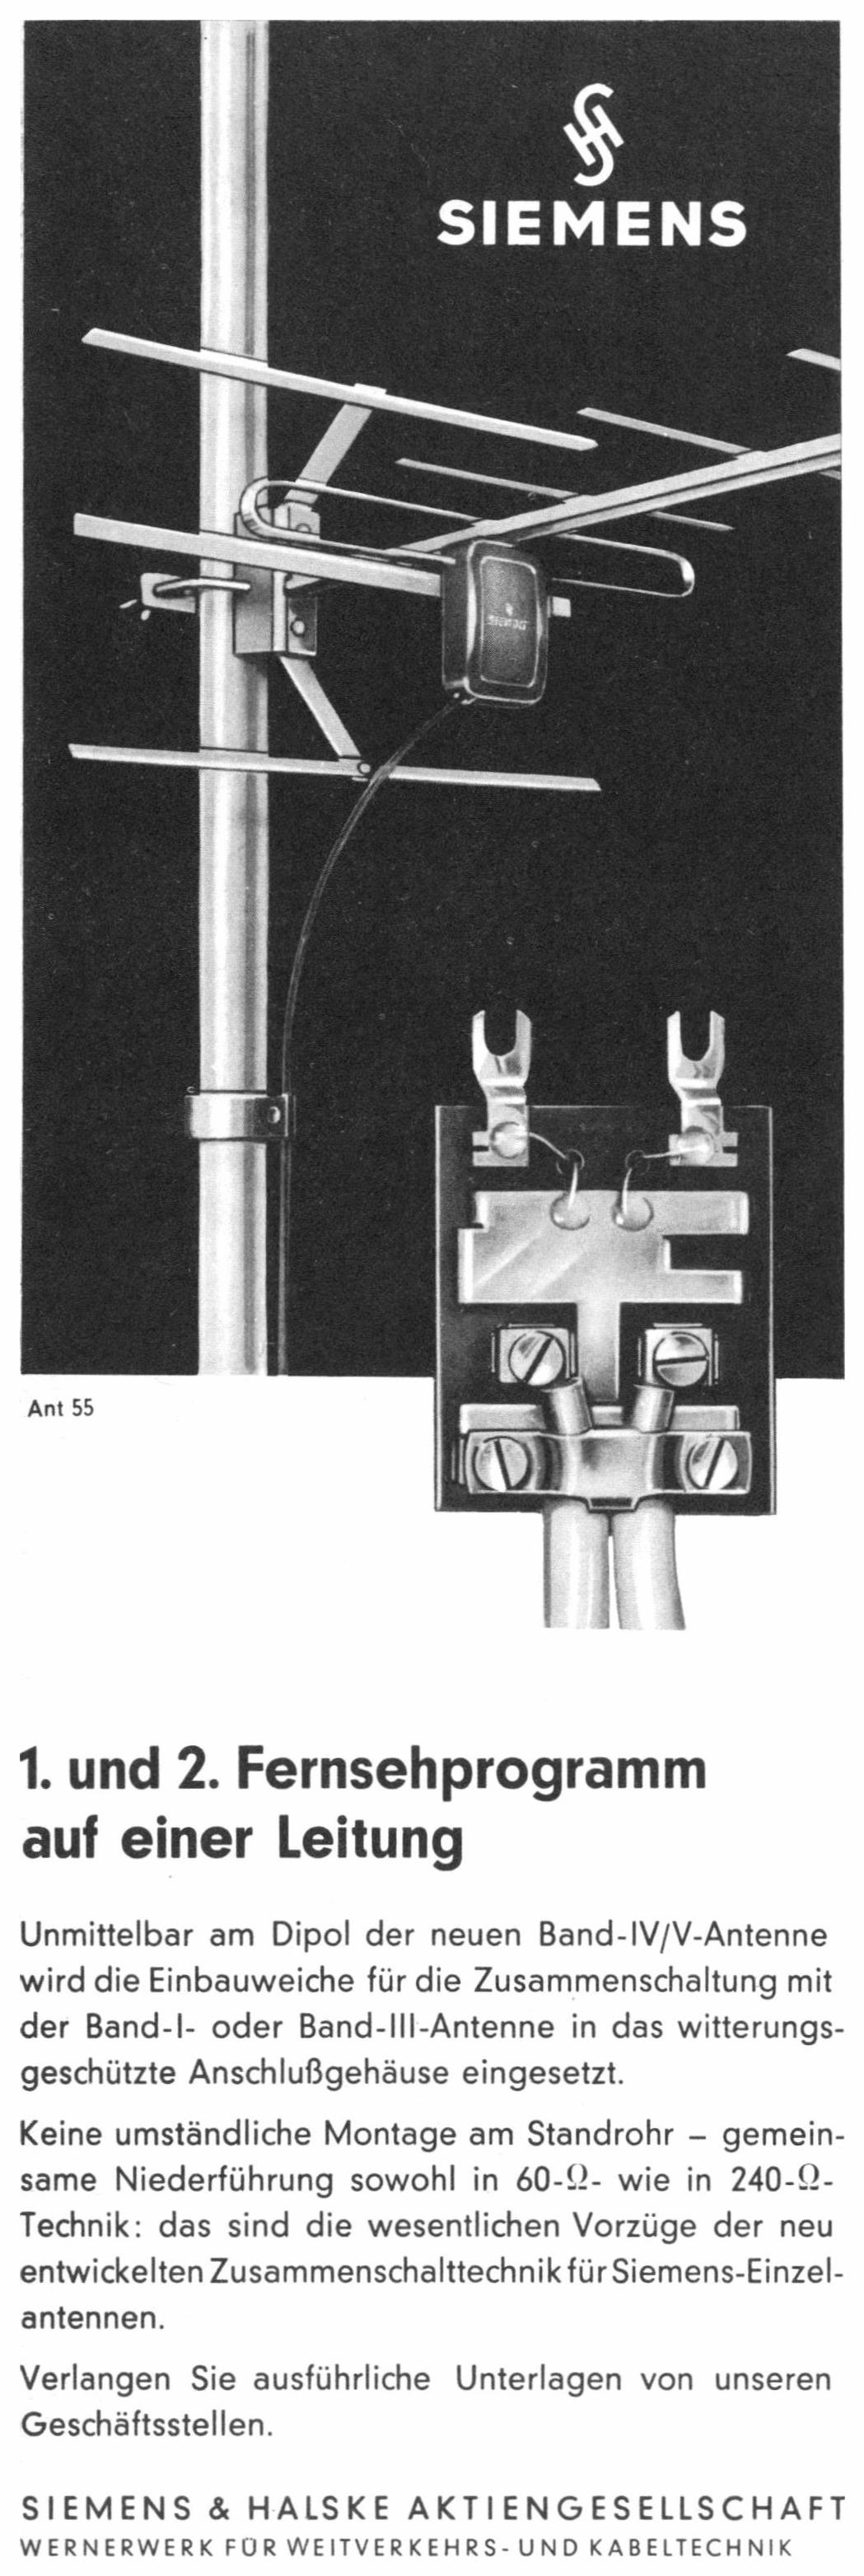 Siemens 1961 10.jpg